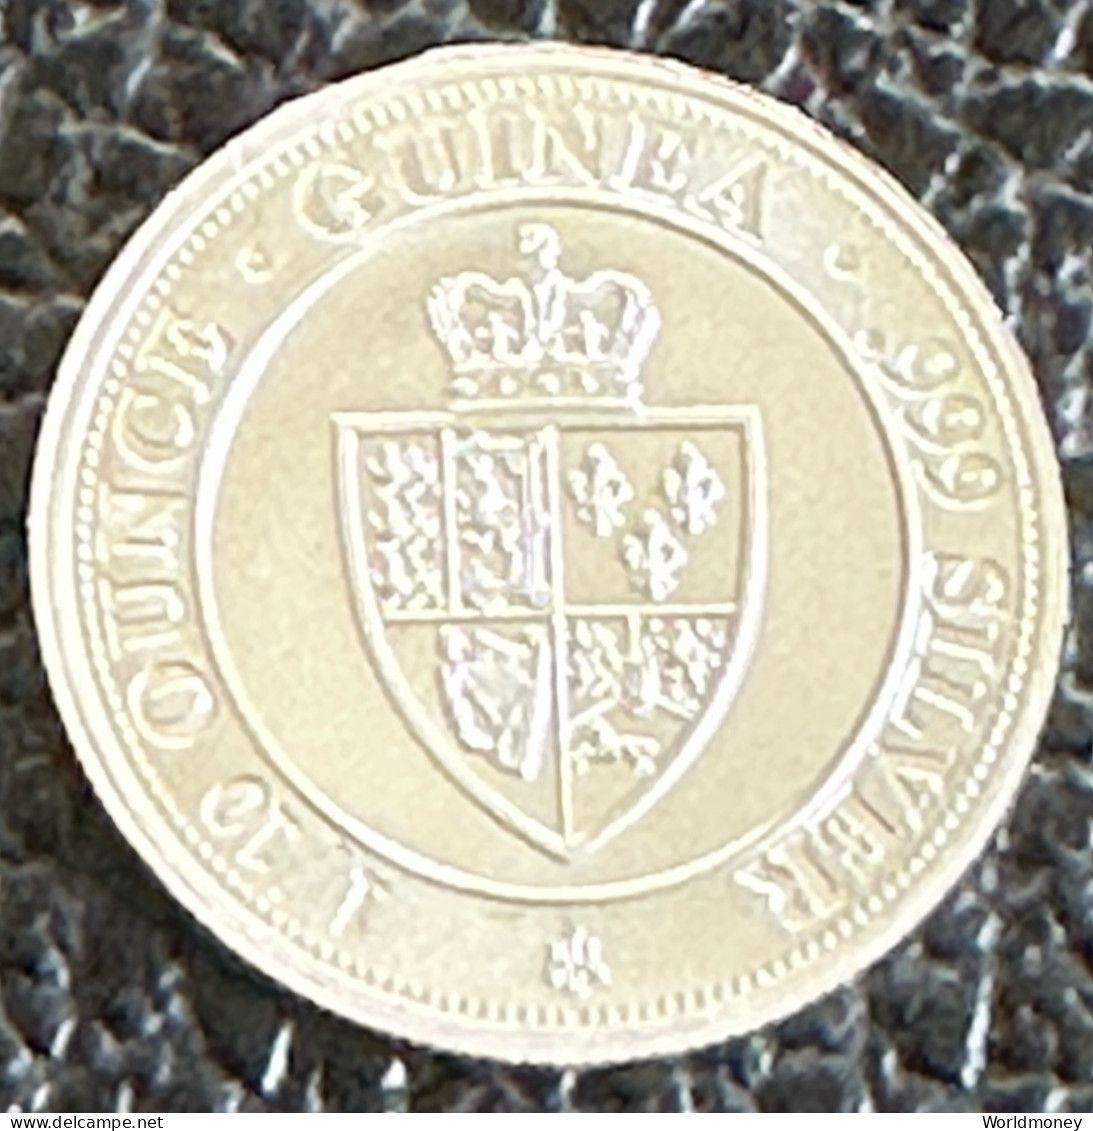 Saint Helena 10 Pence 2020  -  1/10 Oz Spade Guinea Shield (Silver) - St. Helena